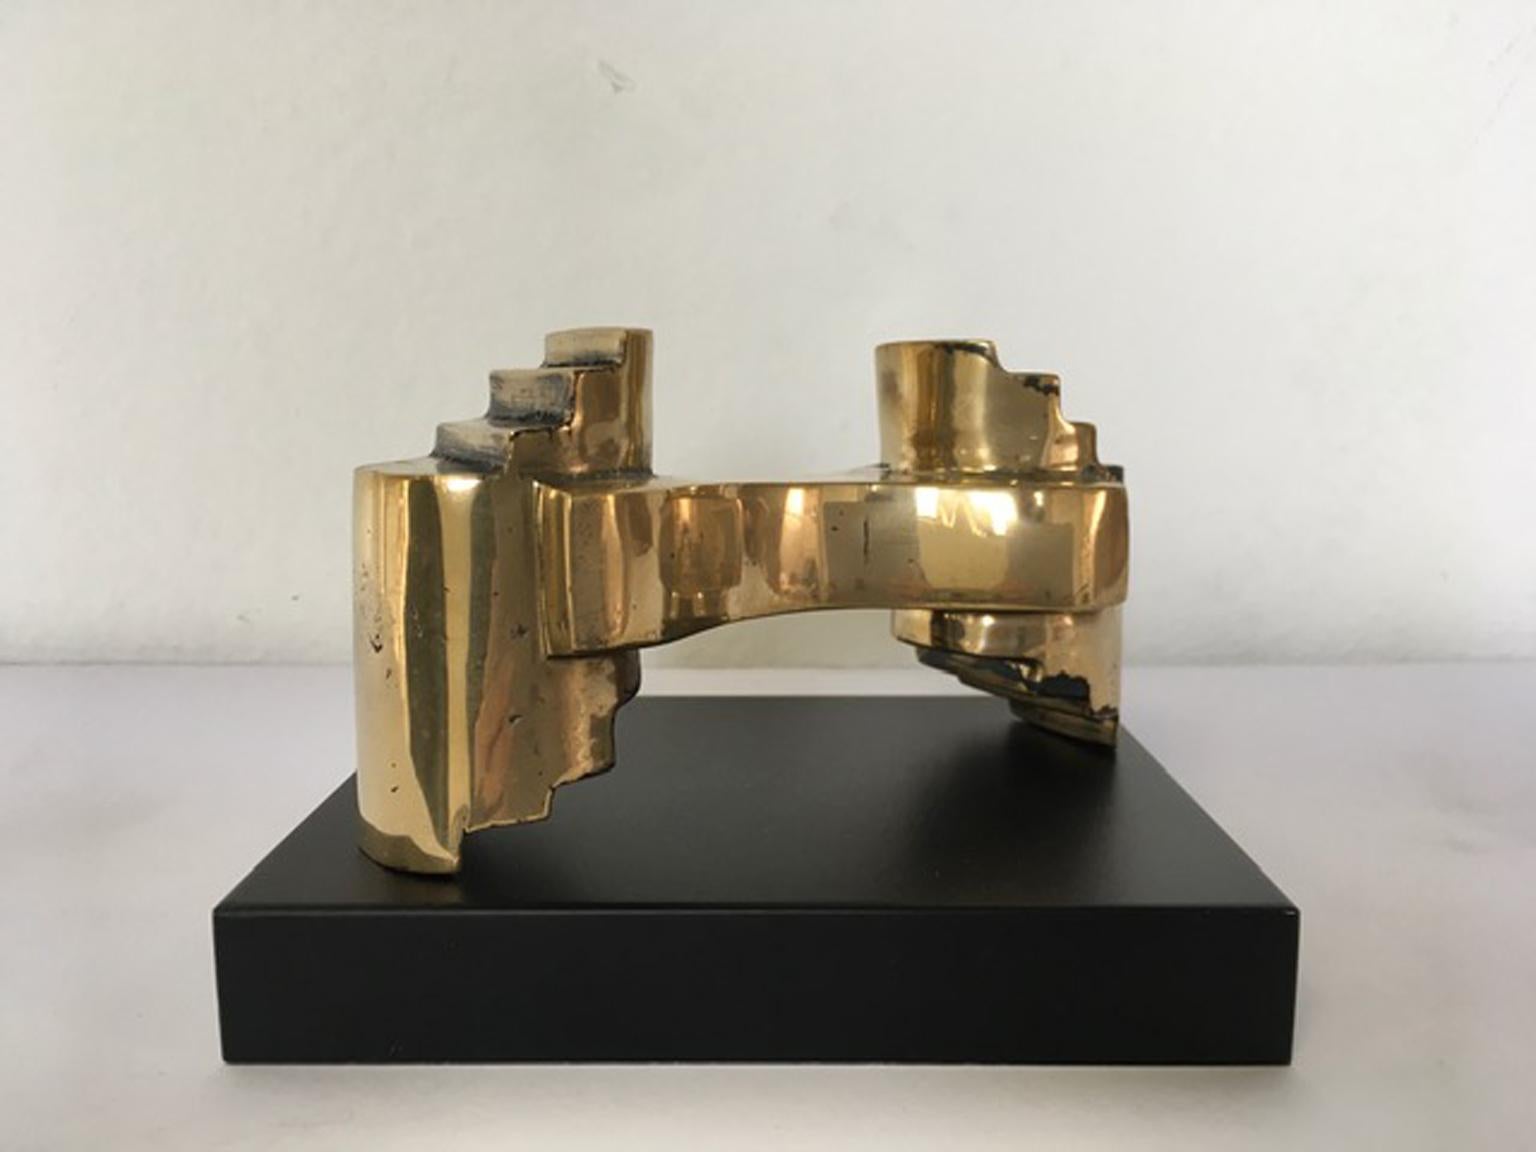 Il s'agit d'une œuvre originale et ironique de l'artiste italien Eli Riva, un maître de la technique sculpturale.
Les jumelles, le titre de l'œuvre, c'est un prototype, une pièce unique.
Avec certificat d'authenticité.
Les dimensions indiquées sont